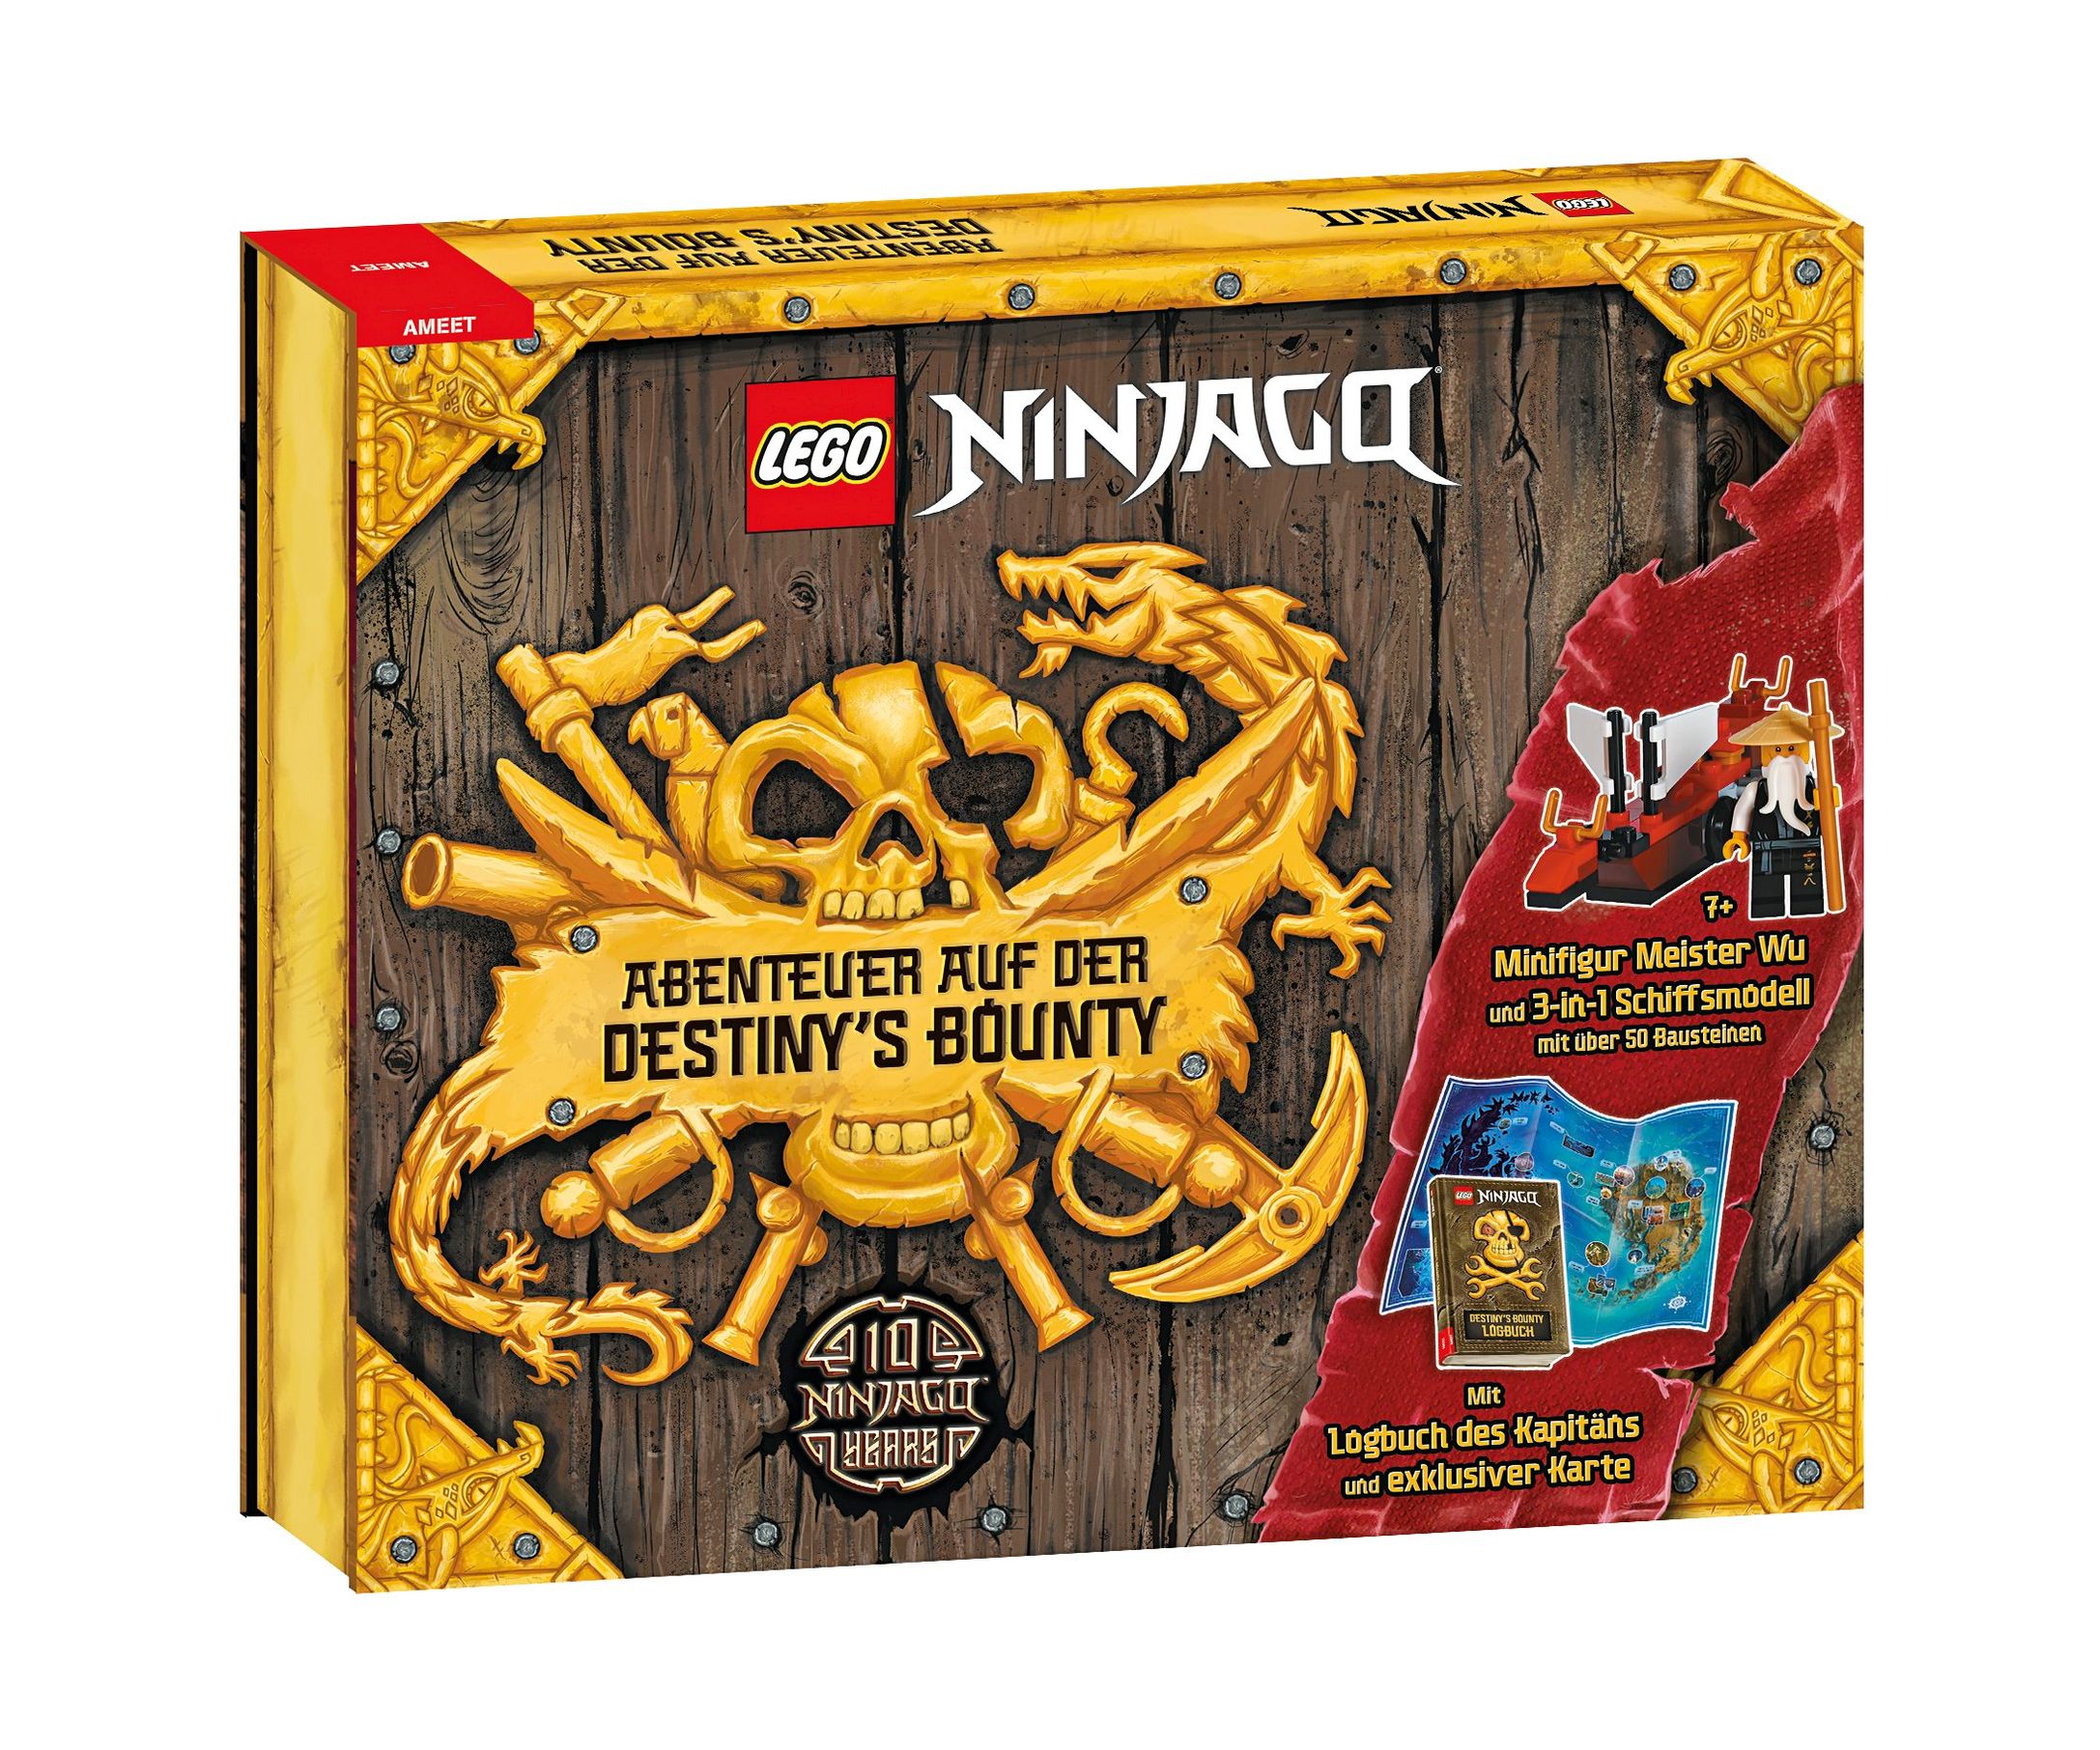 LEGO® NINJAGO® - Abenteuer auf der Destiny's Bounty, m. Minifigur u.  Legosteinen Buch versandkostenfrei bei Weltbild.de bestellen